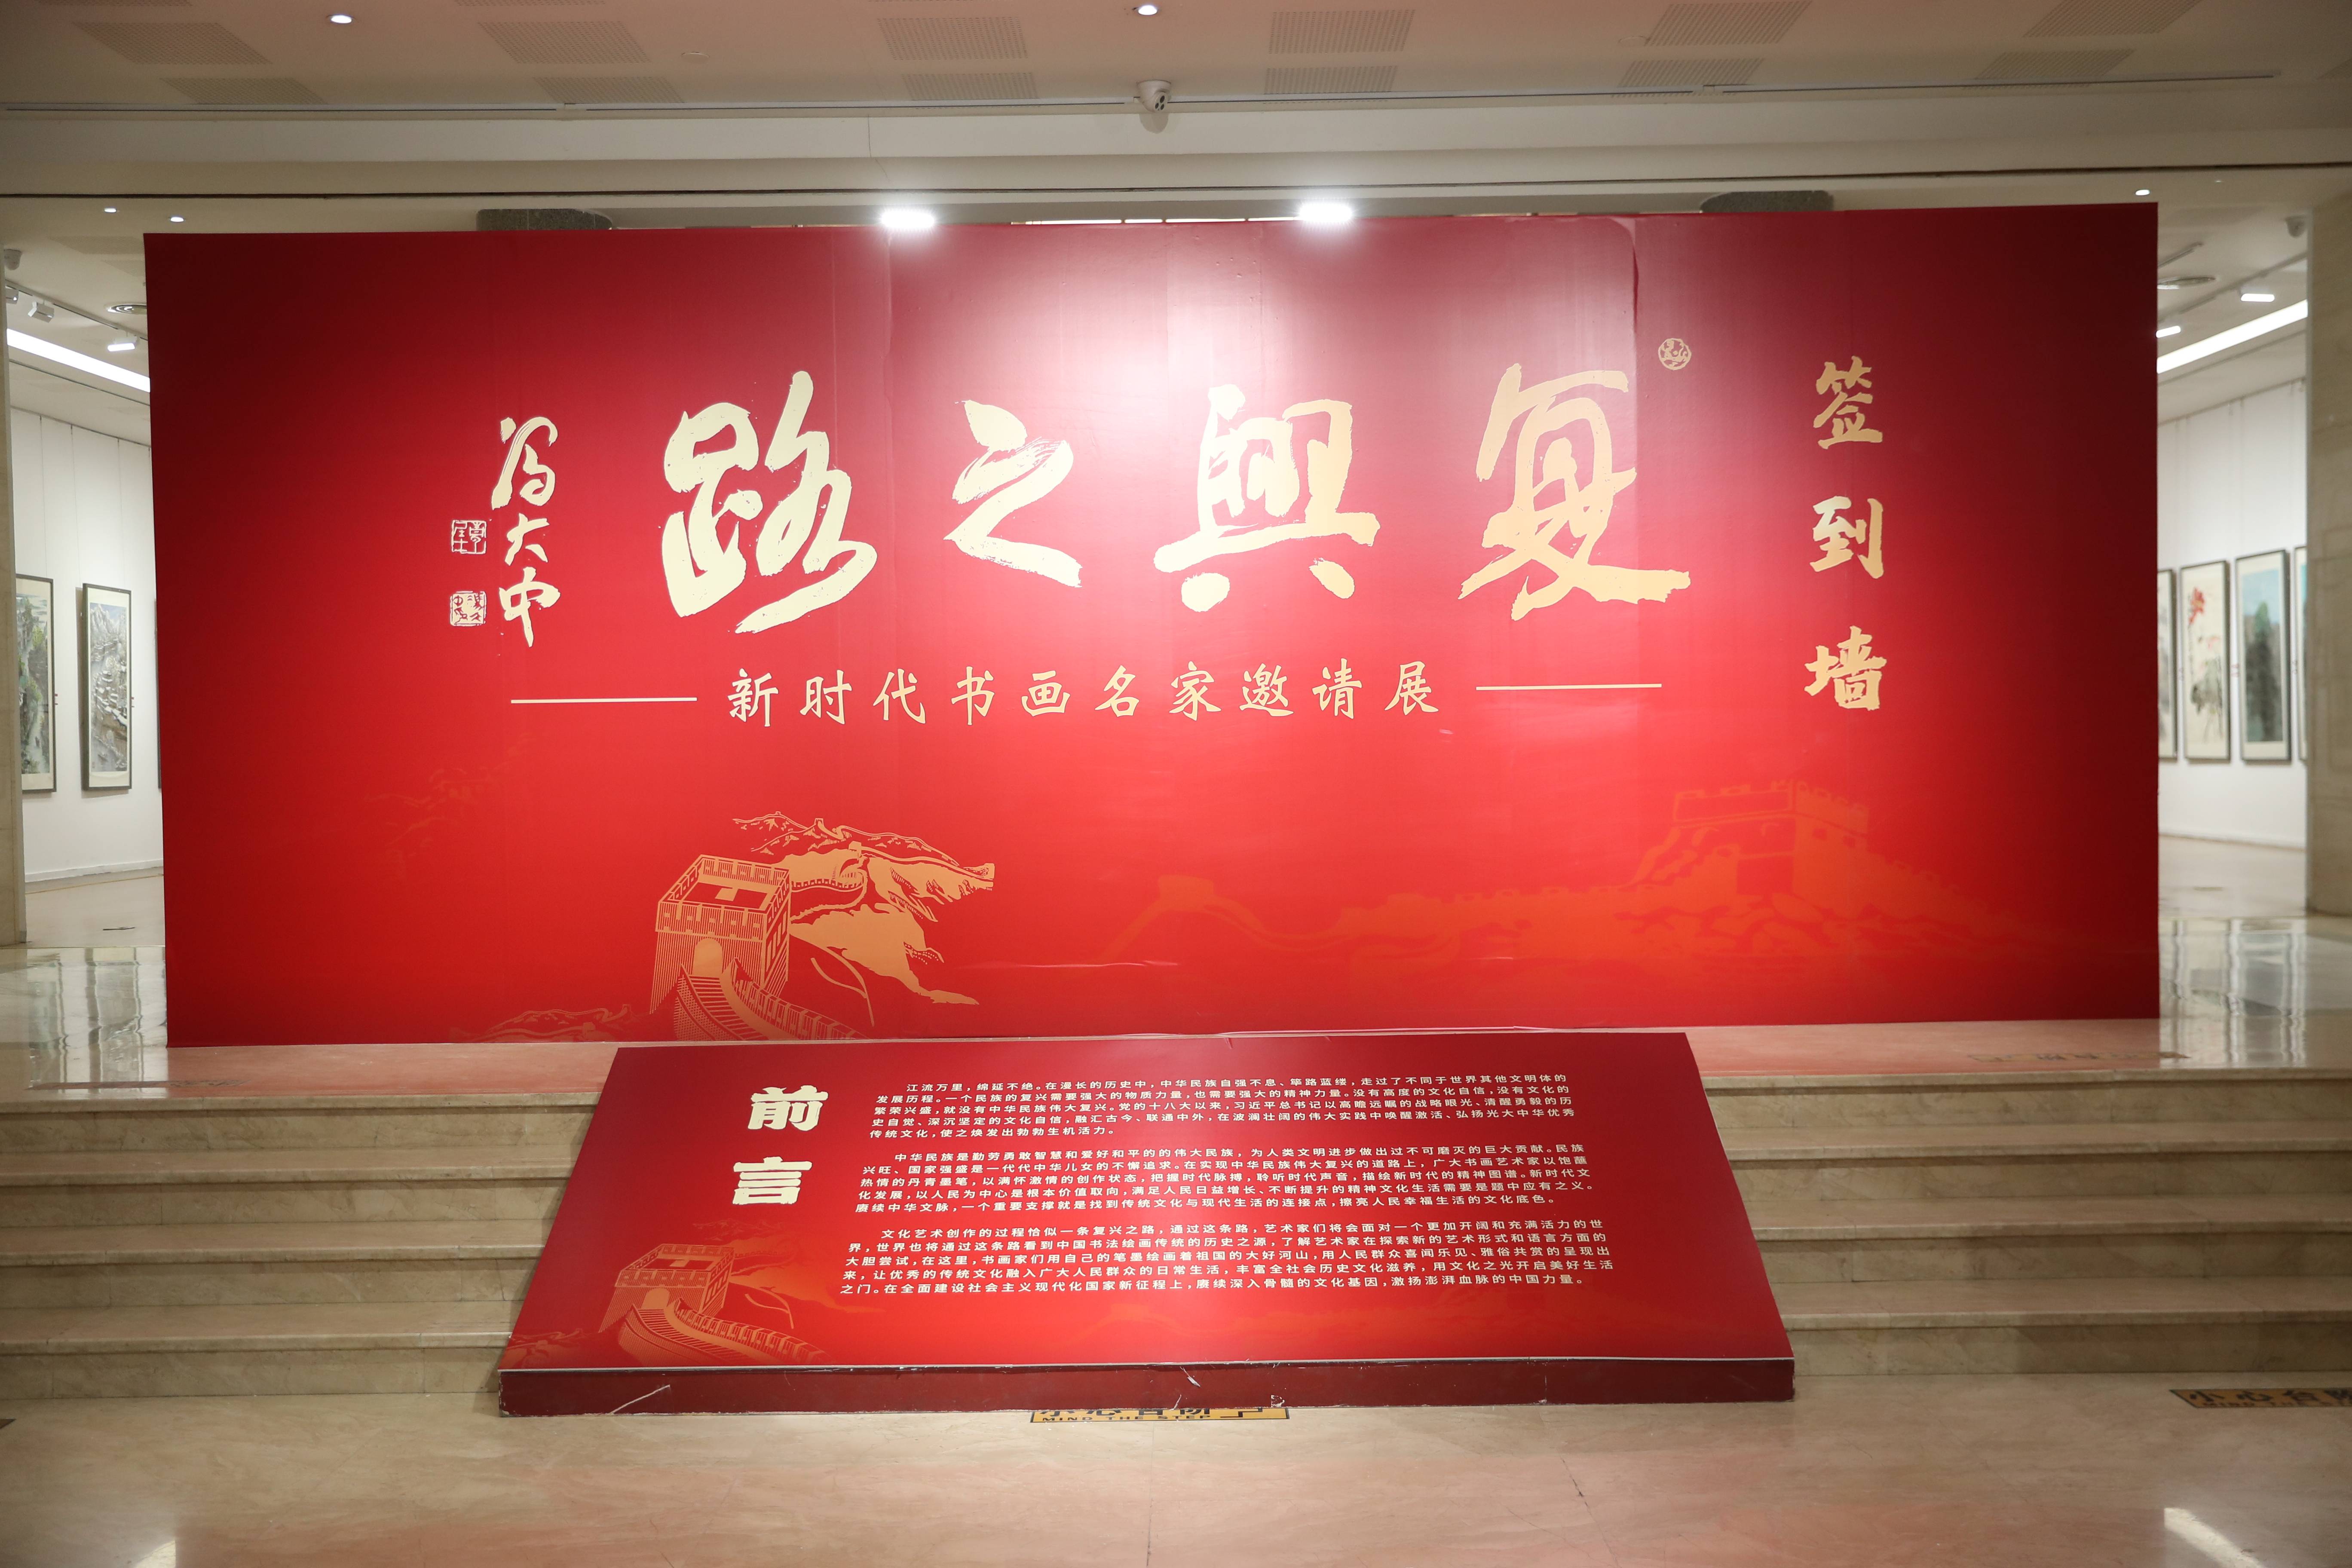 复兴之路——新时代书画名家邀请展在北京炎黄艺术馆盛大开幕